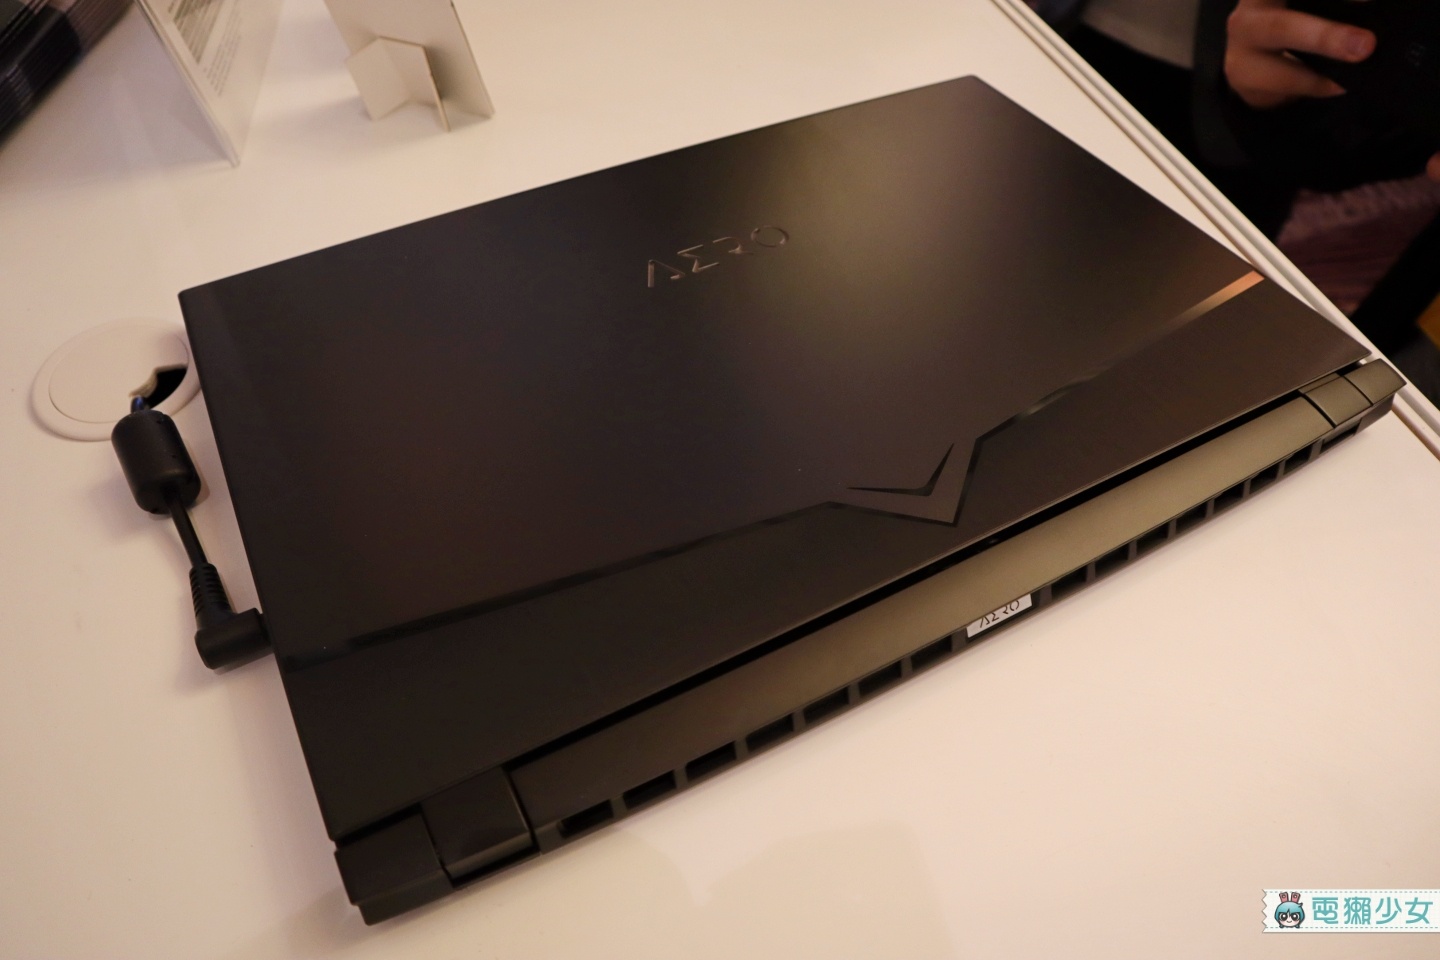 技嘉發表最新New AERO系列筆電 4K OLED螢幕、最高搭載i9-9980HK處理器、Pantone認證螢幕 打造行動工作室！[Computex2019]